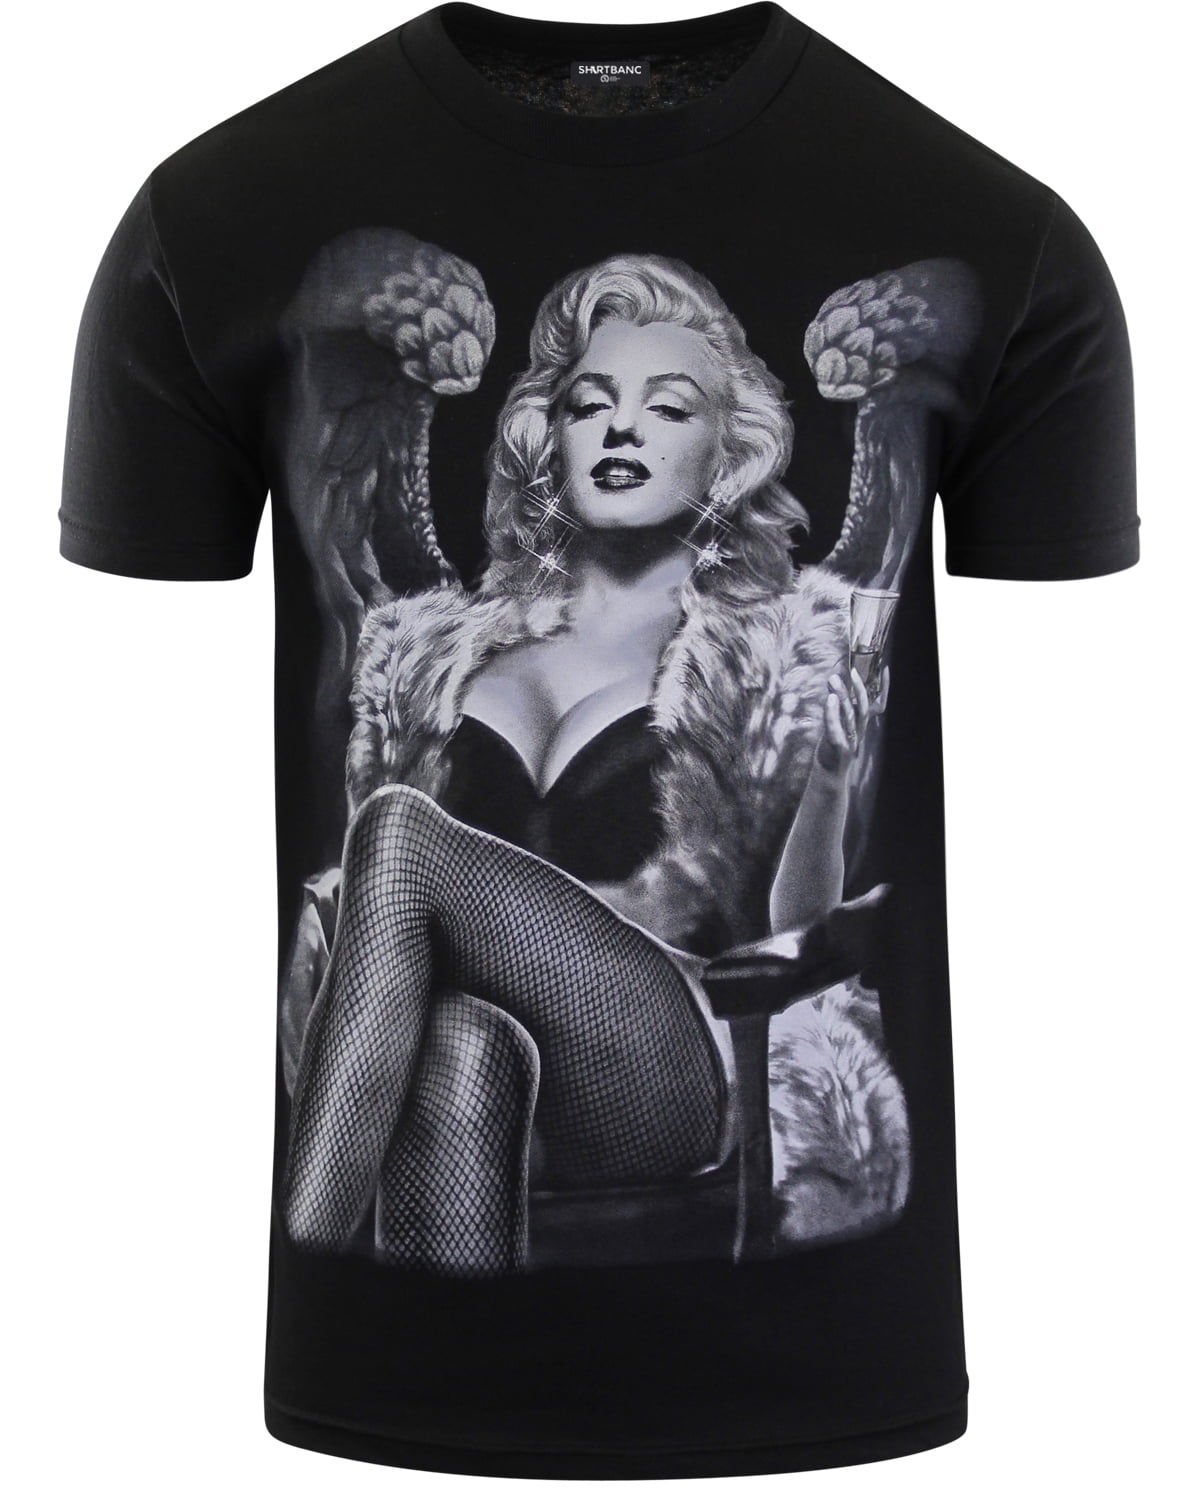 Marilyn Monroe Blonde Bombshell Gun Smoke Glamour Gift Urban Graphic T-Shirt